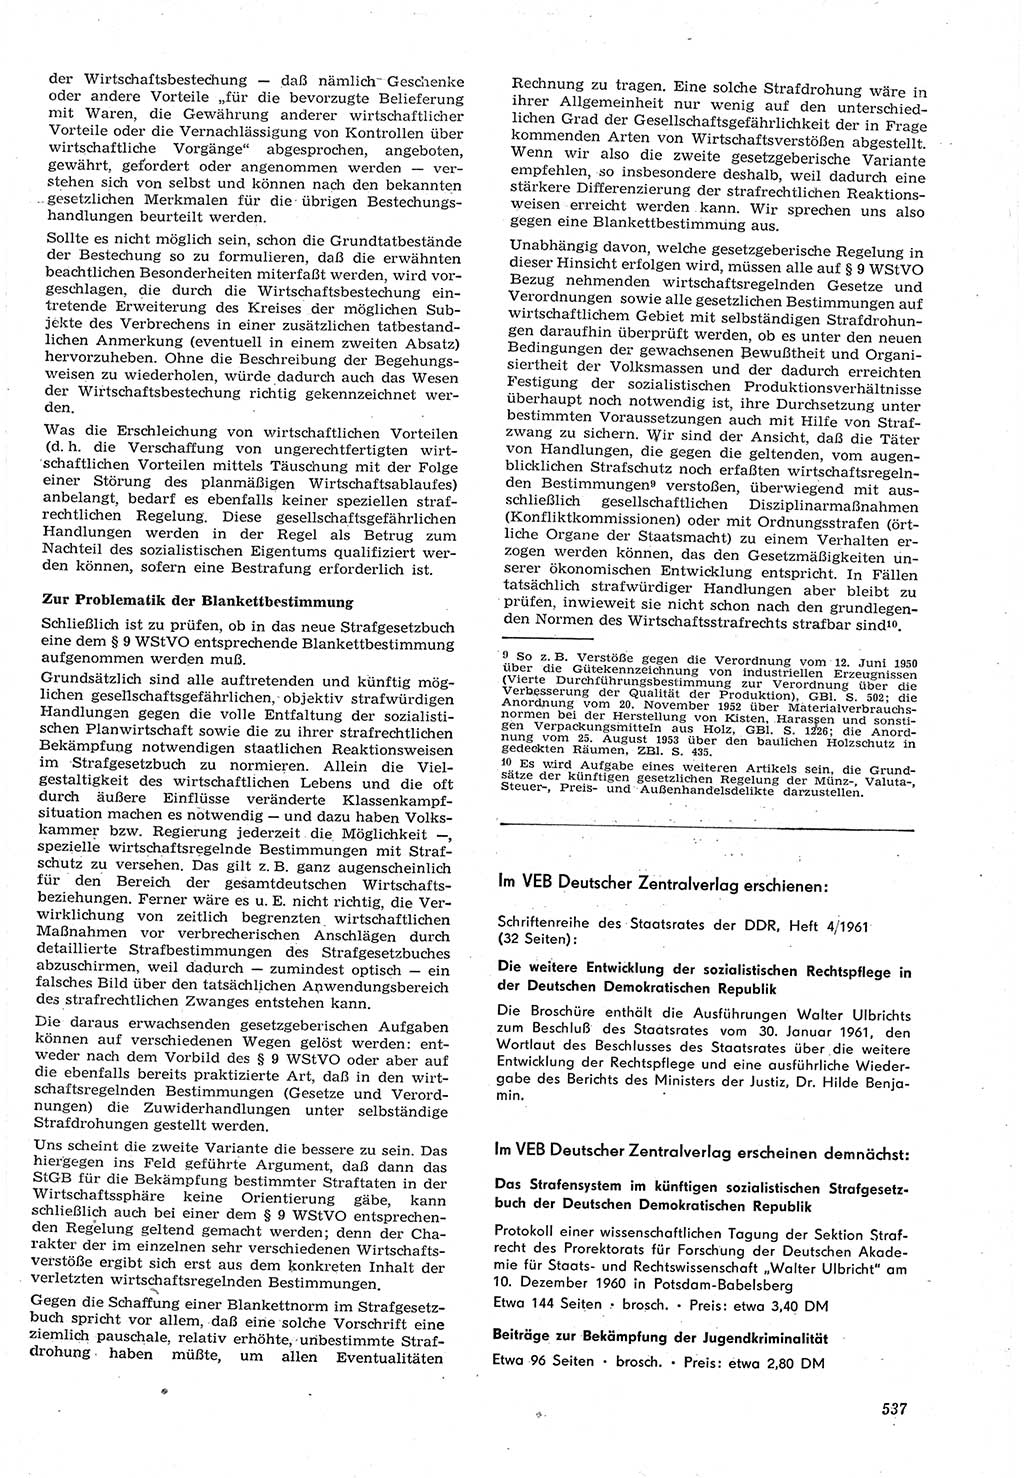 Neue Justiz (NJ), Zeitschrift für Recht und Rechtswissenschaft [Deutsche Demokratische Republik (DDR)], 15. Jahrgang 1961, Seite 537 (NJ DDR 1961, S. 537)